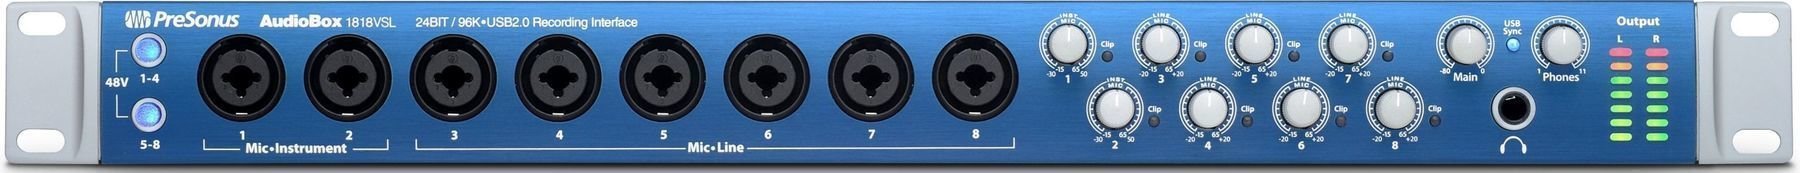 USB Audio interfész Presonus AudioBox 1818 VSL